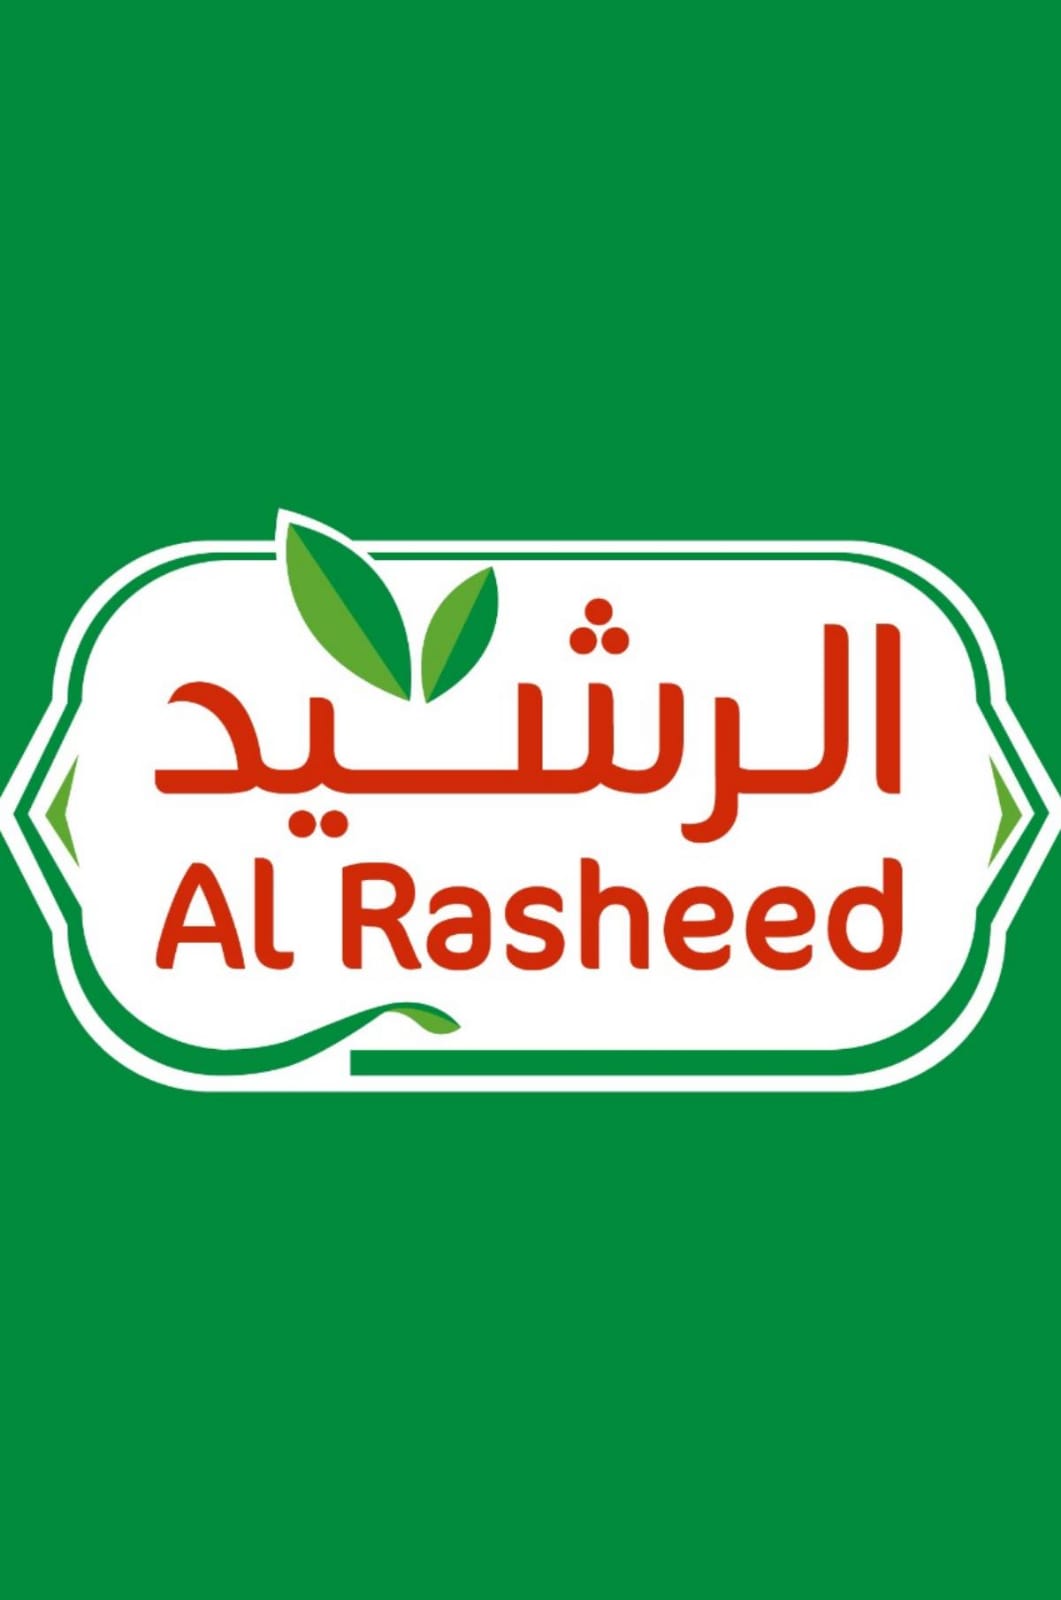 Al Rasheed